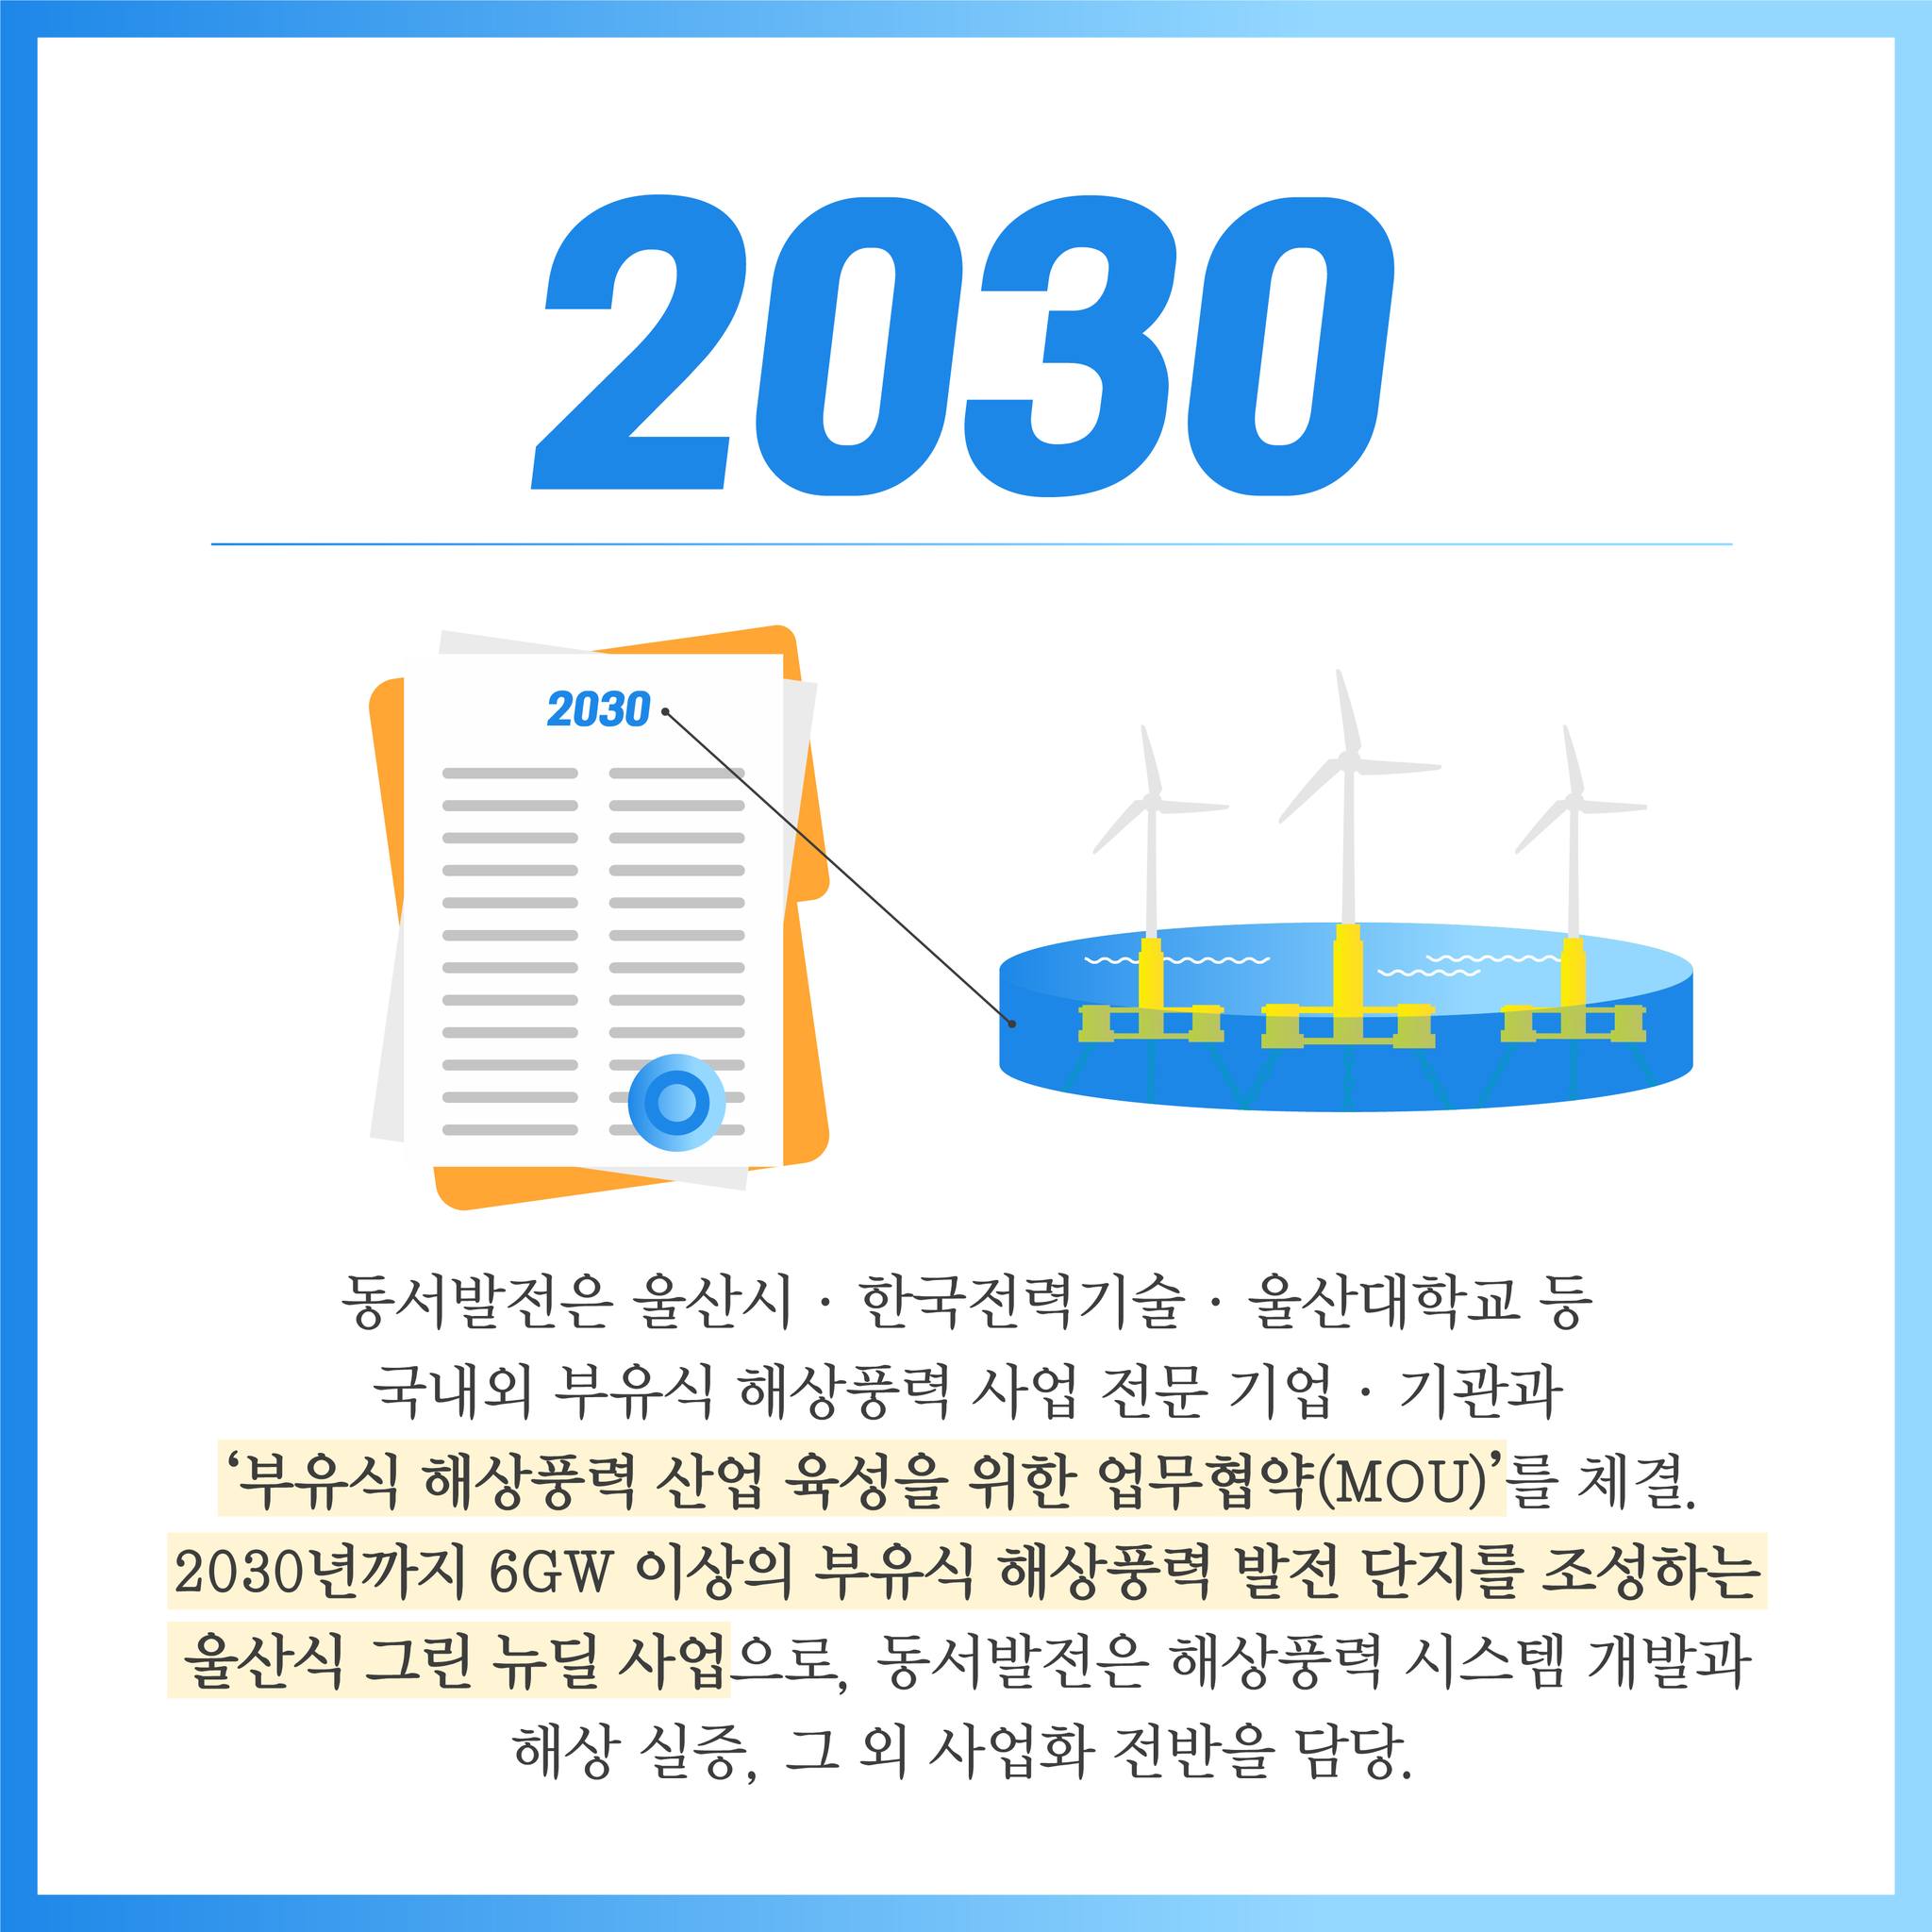 2030 2030 동서발전은 울산시 한국전력기술 울산대학교등 국내외 부유식 해상풍력 사업전문기업 기업 기관과 부유식 해상풍력 산업 육성을 위한 업무협약 체결. 2030년까지 6GW 이상의 부유식 해상풍력 발전 단지를 조성하는 울산식 그린 뉴딜 사업으로, 동서발전은 해상풍력 시스템 개발과 해상 실증, 그 외 사업화 전반을 담당.